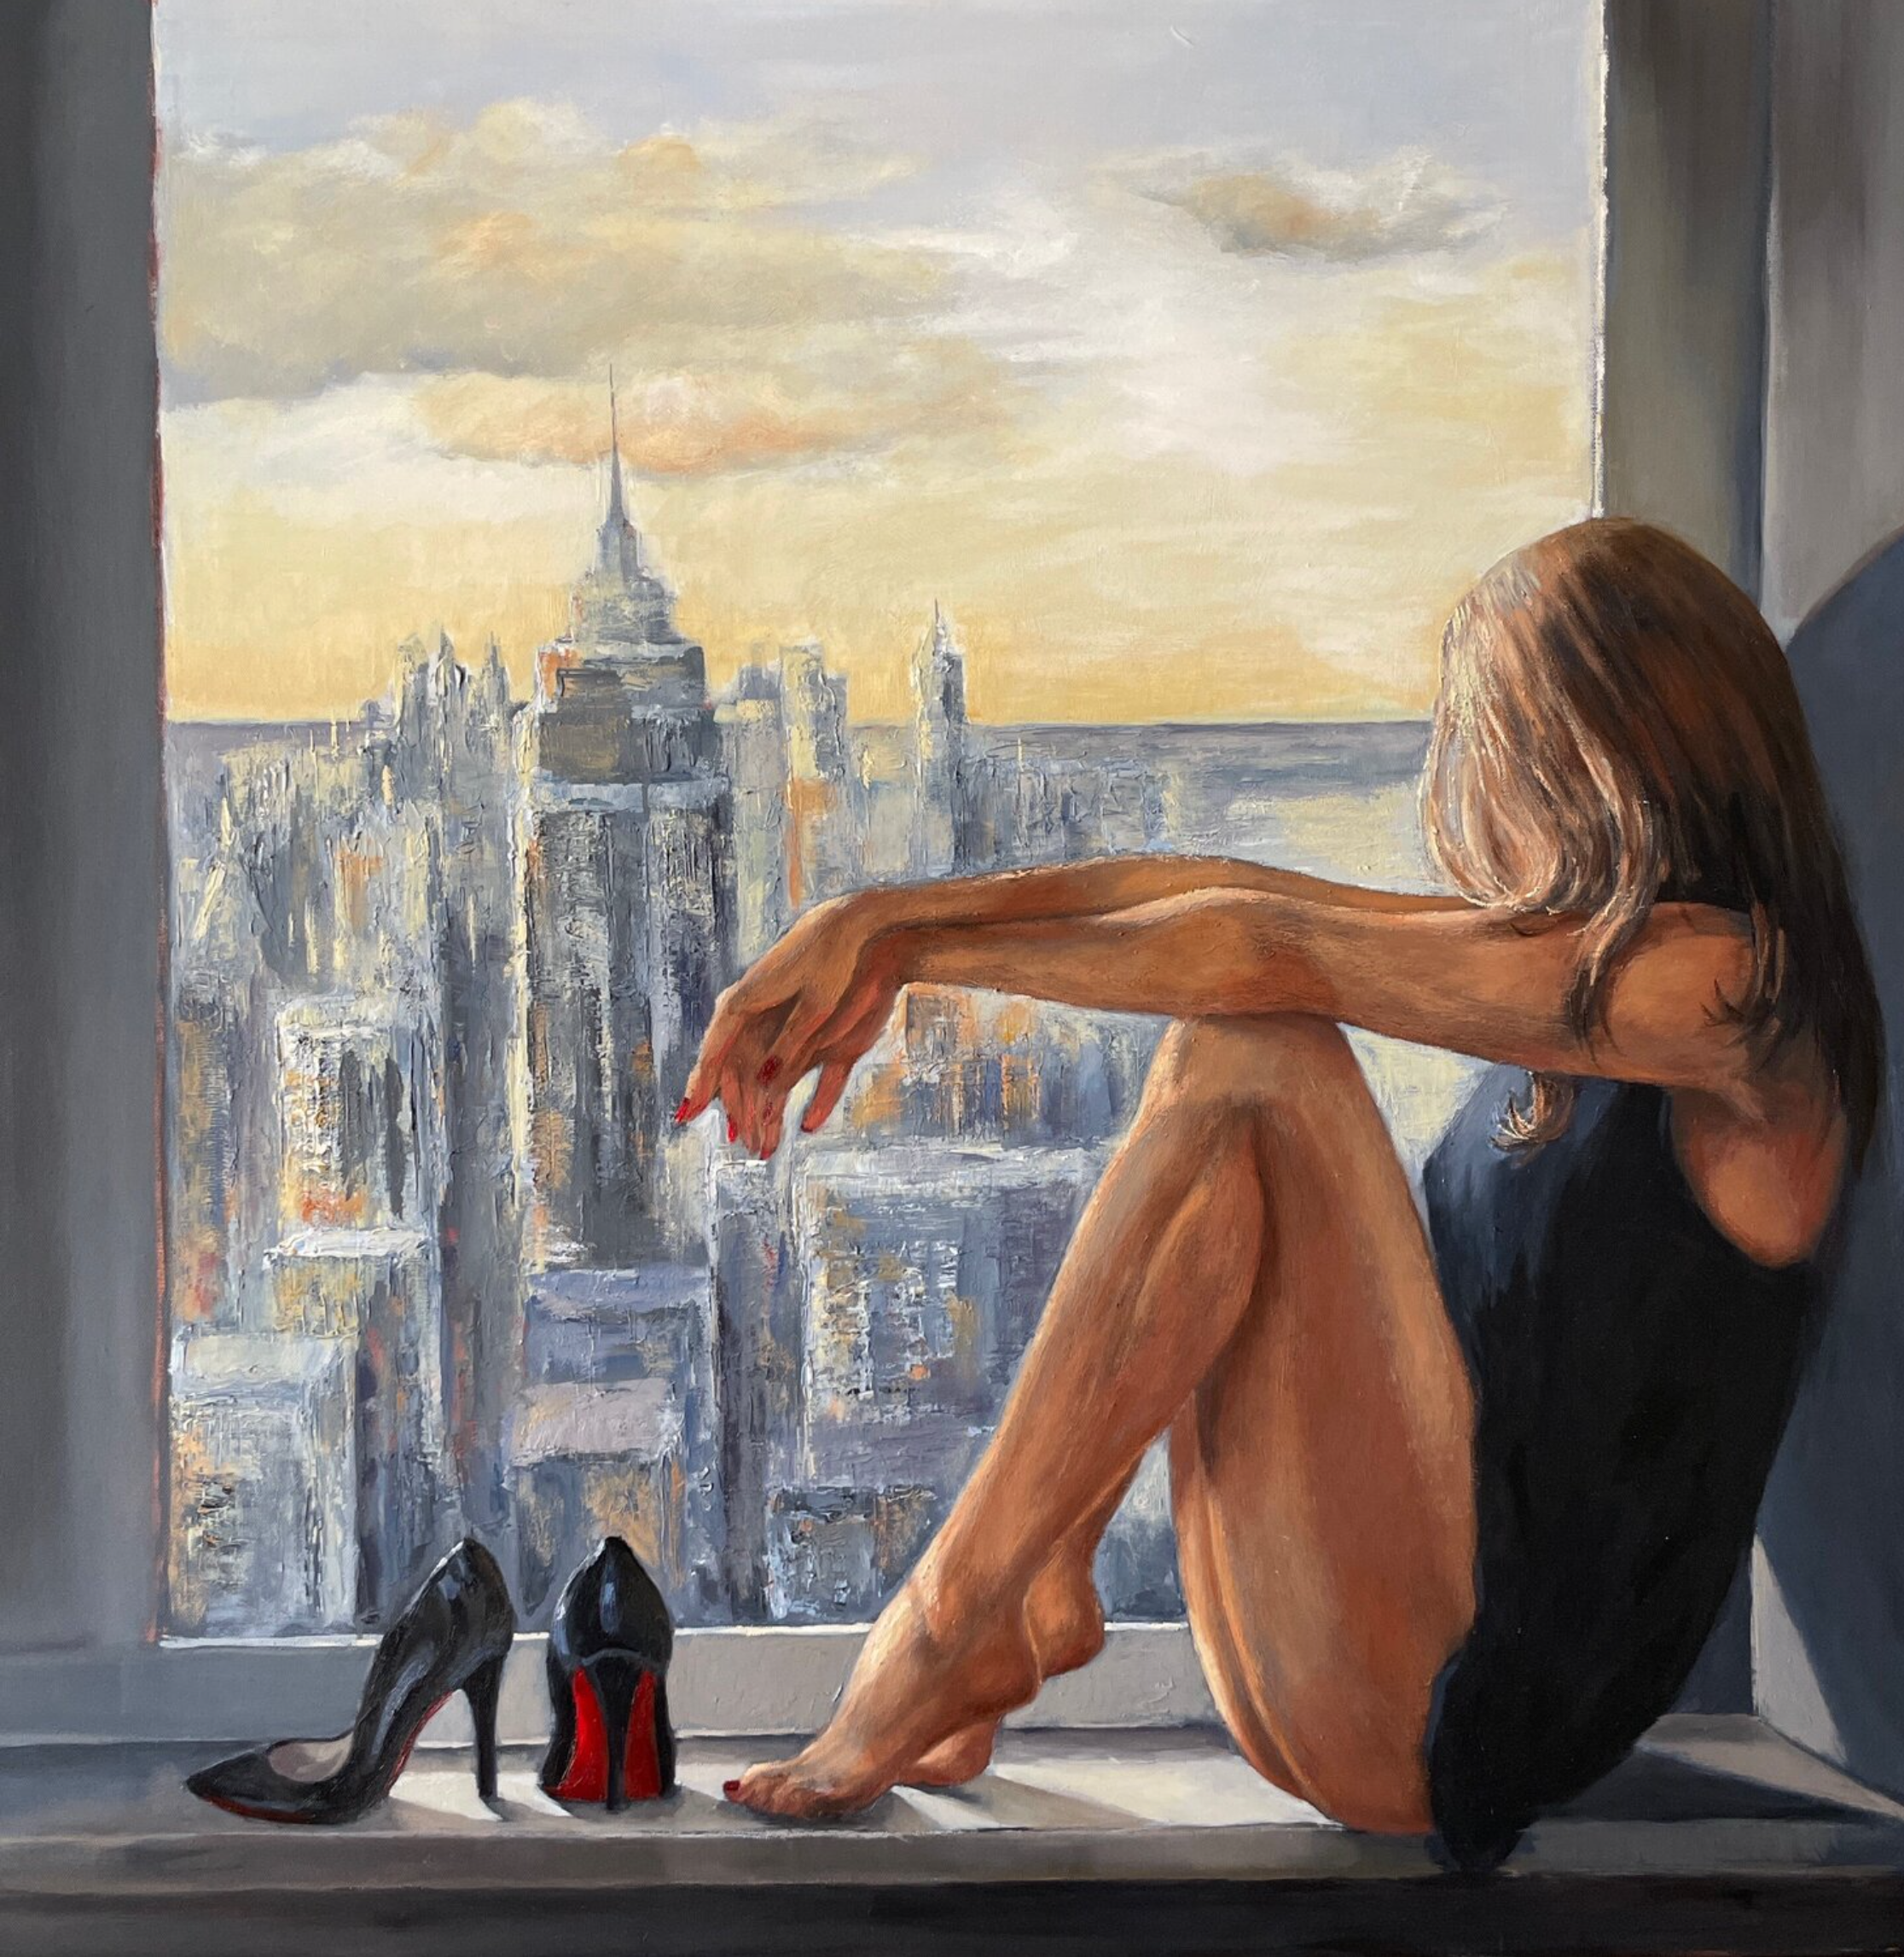 Le tableau "New Day" d'Anna Reznikova montre une jolie femme assise sur le rebord d'une fenêtre à Manhattan.